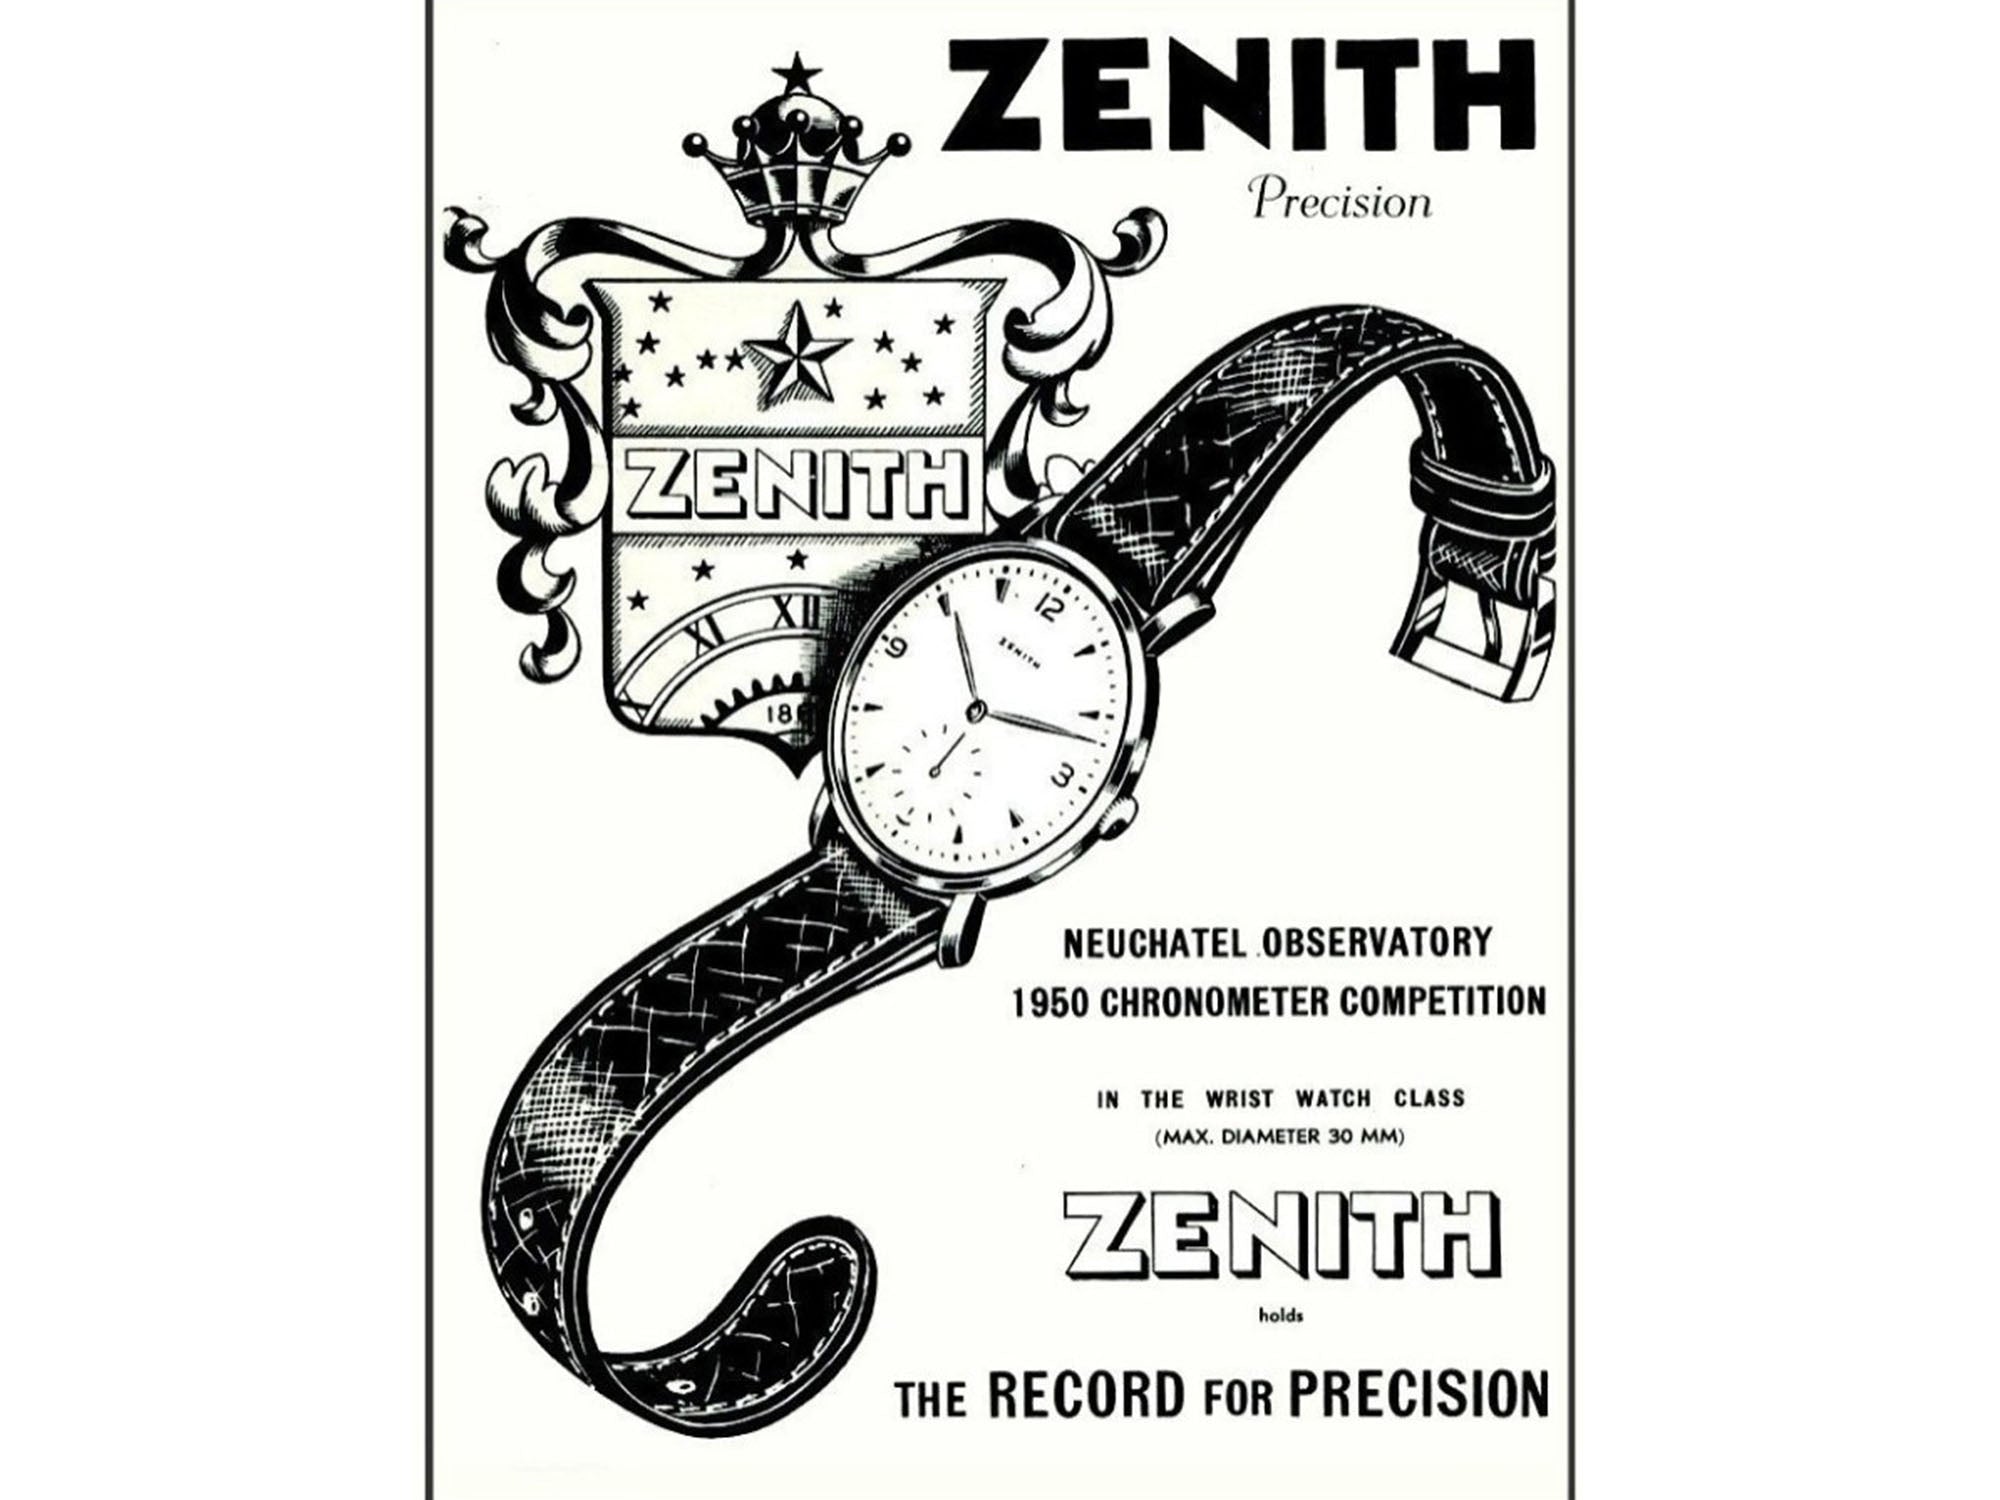 Zenith chronometer ad